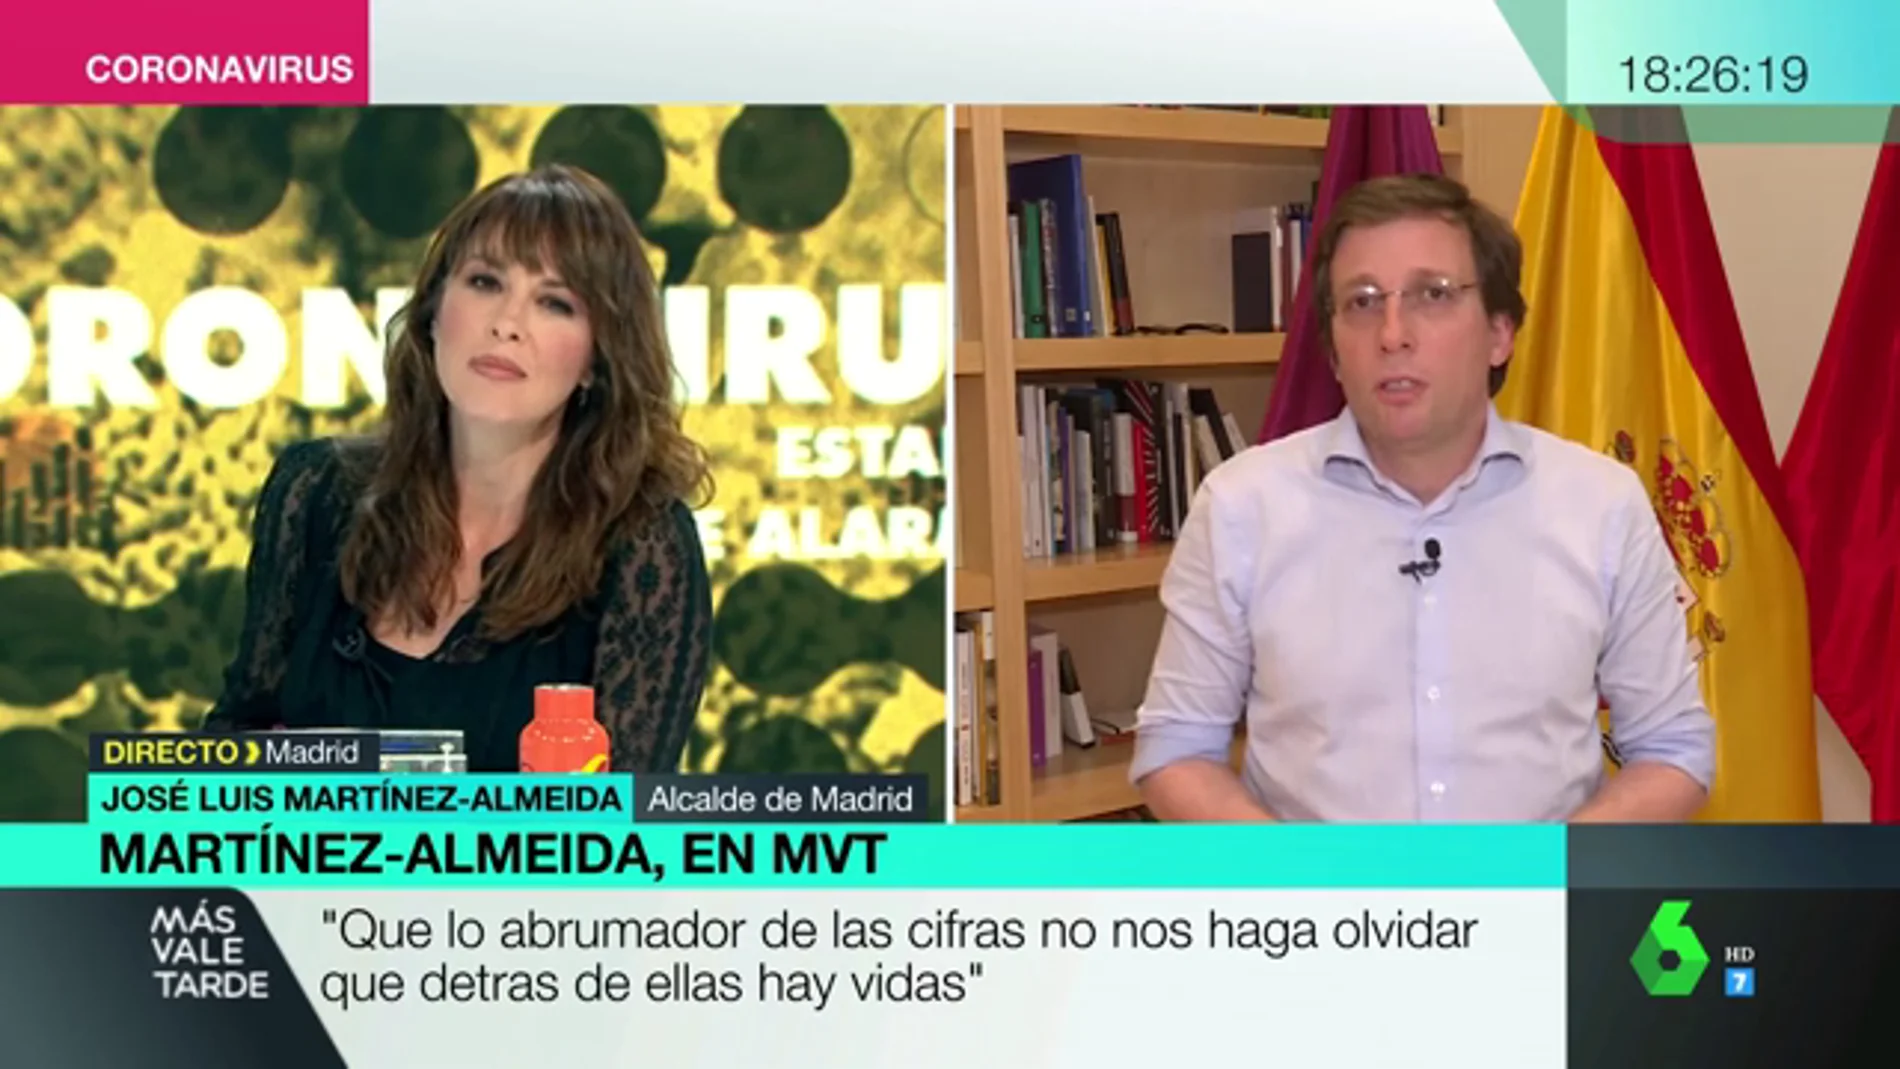 Martínez-Almeida, sobre la crisis del coronavirus: "Yo haré autocrítica antes de mirar a los demás"